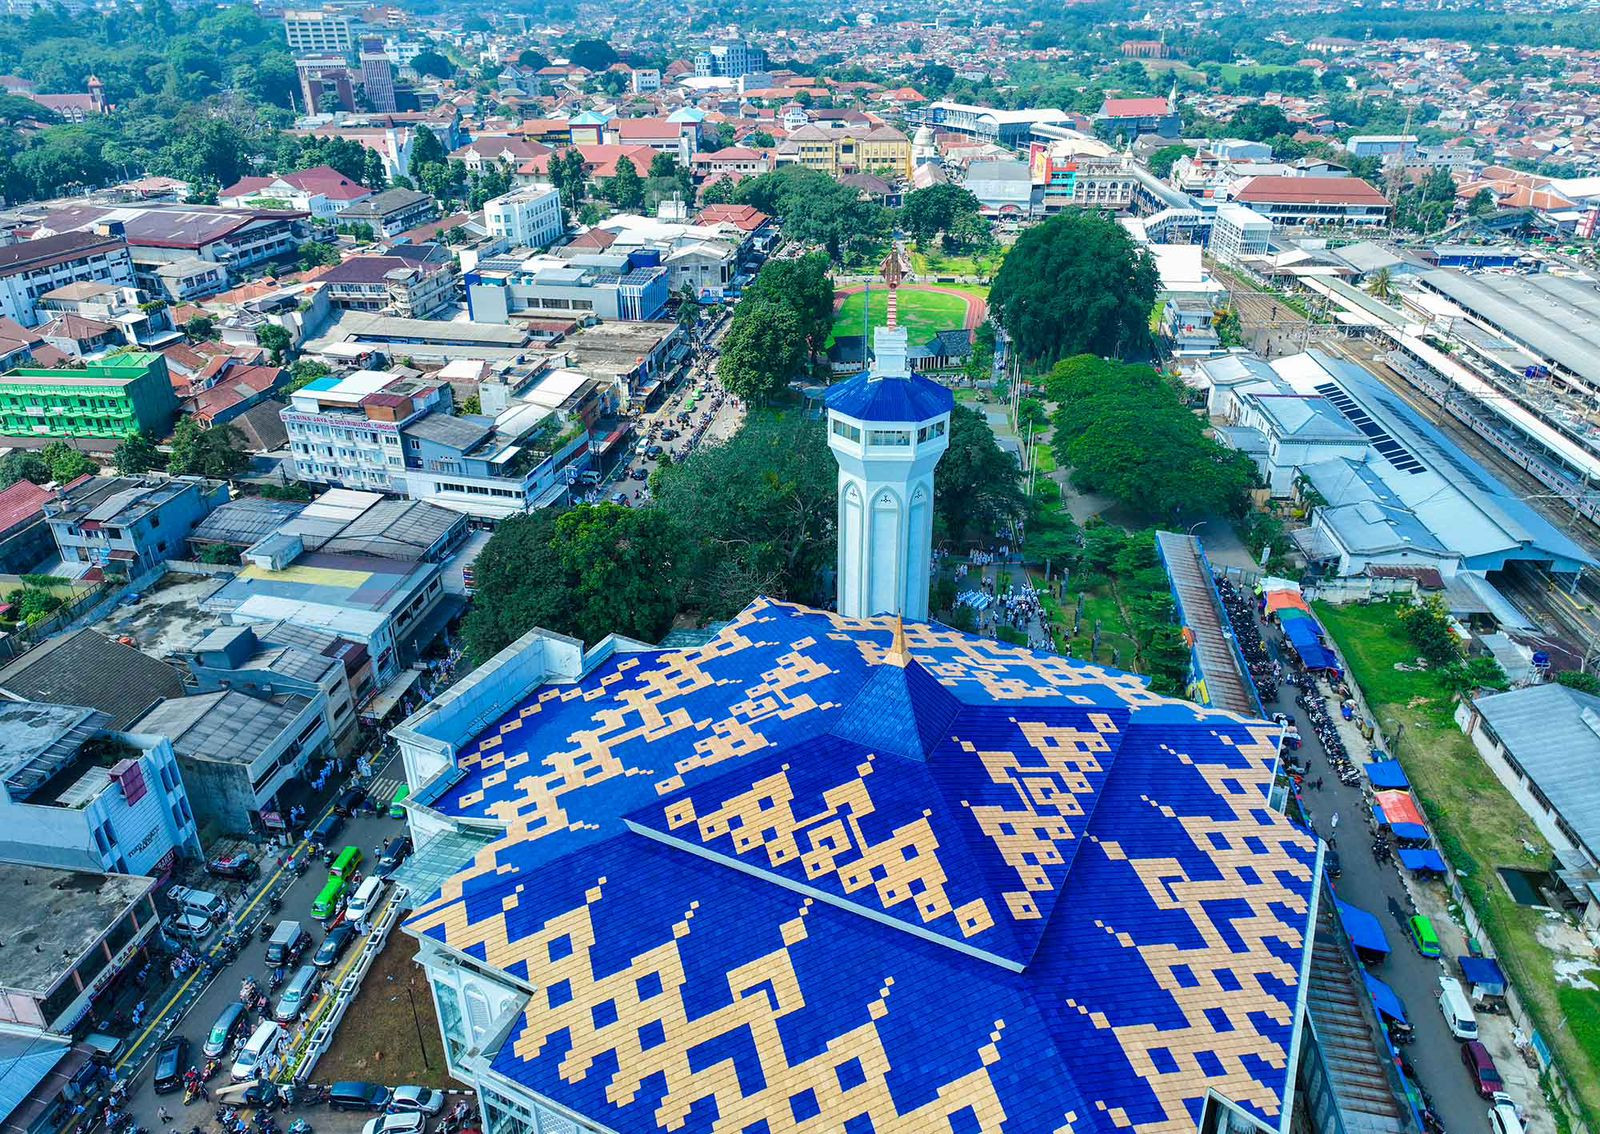 Masjid Agung Al Isra Diharapkan Jadi Pusat Ekonomi, Sosial dan Peradaban Kota Bogor - JPNN.com Jabar